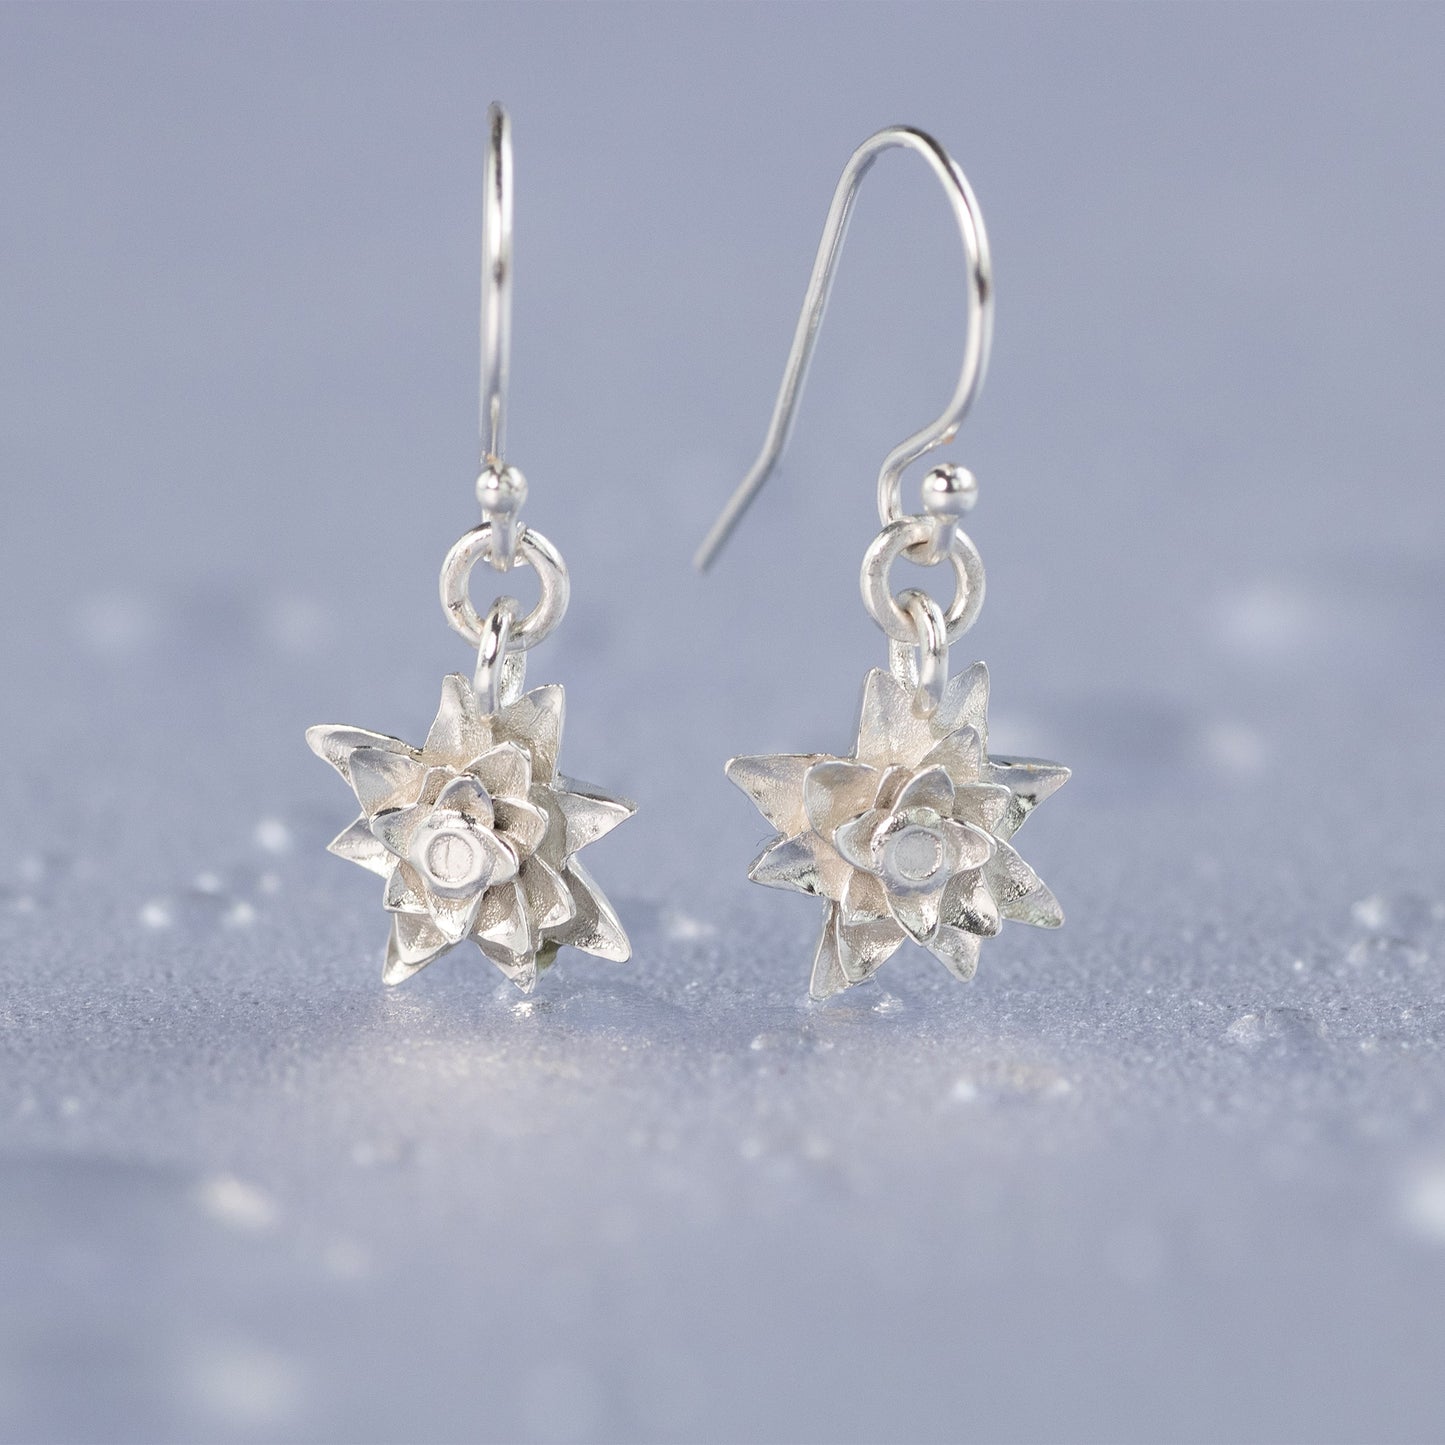 Water Lily Earrings - Silver